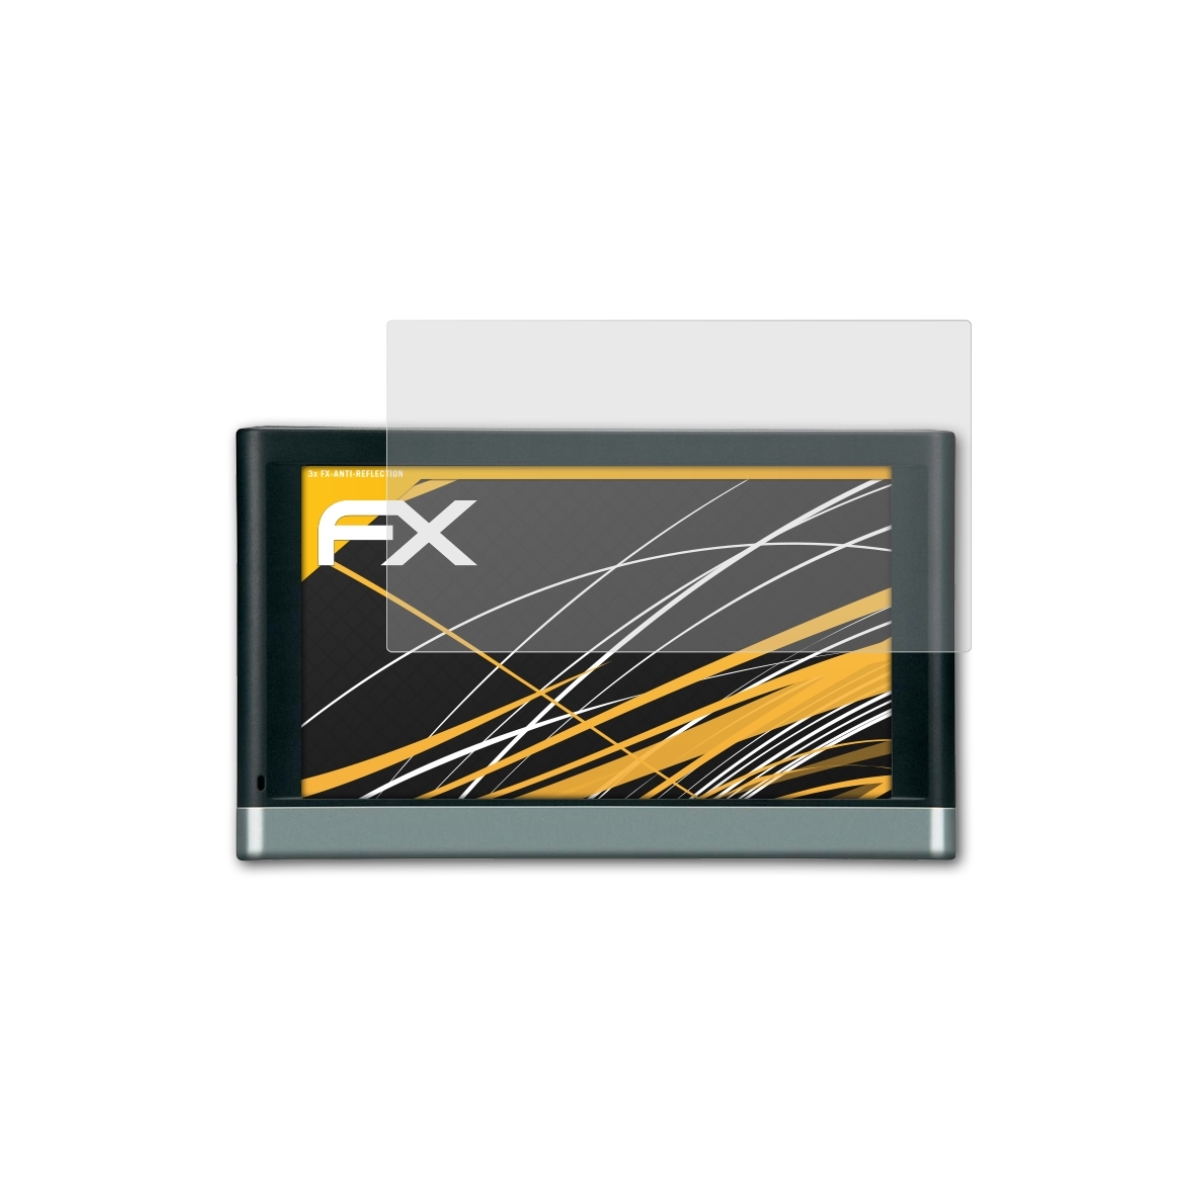 ATFOLIX 3x nüvi Displayschutz(für 2597) FX-Antireflex Garmin